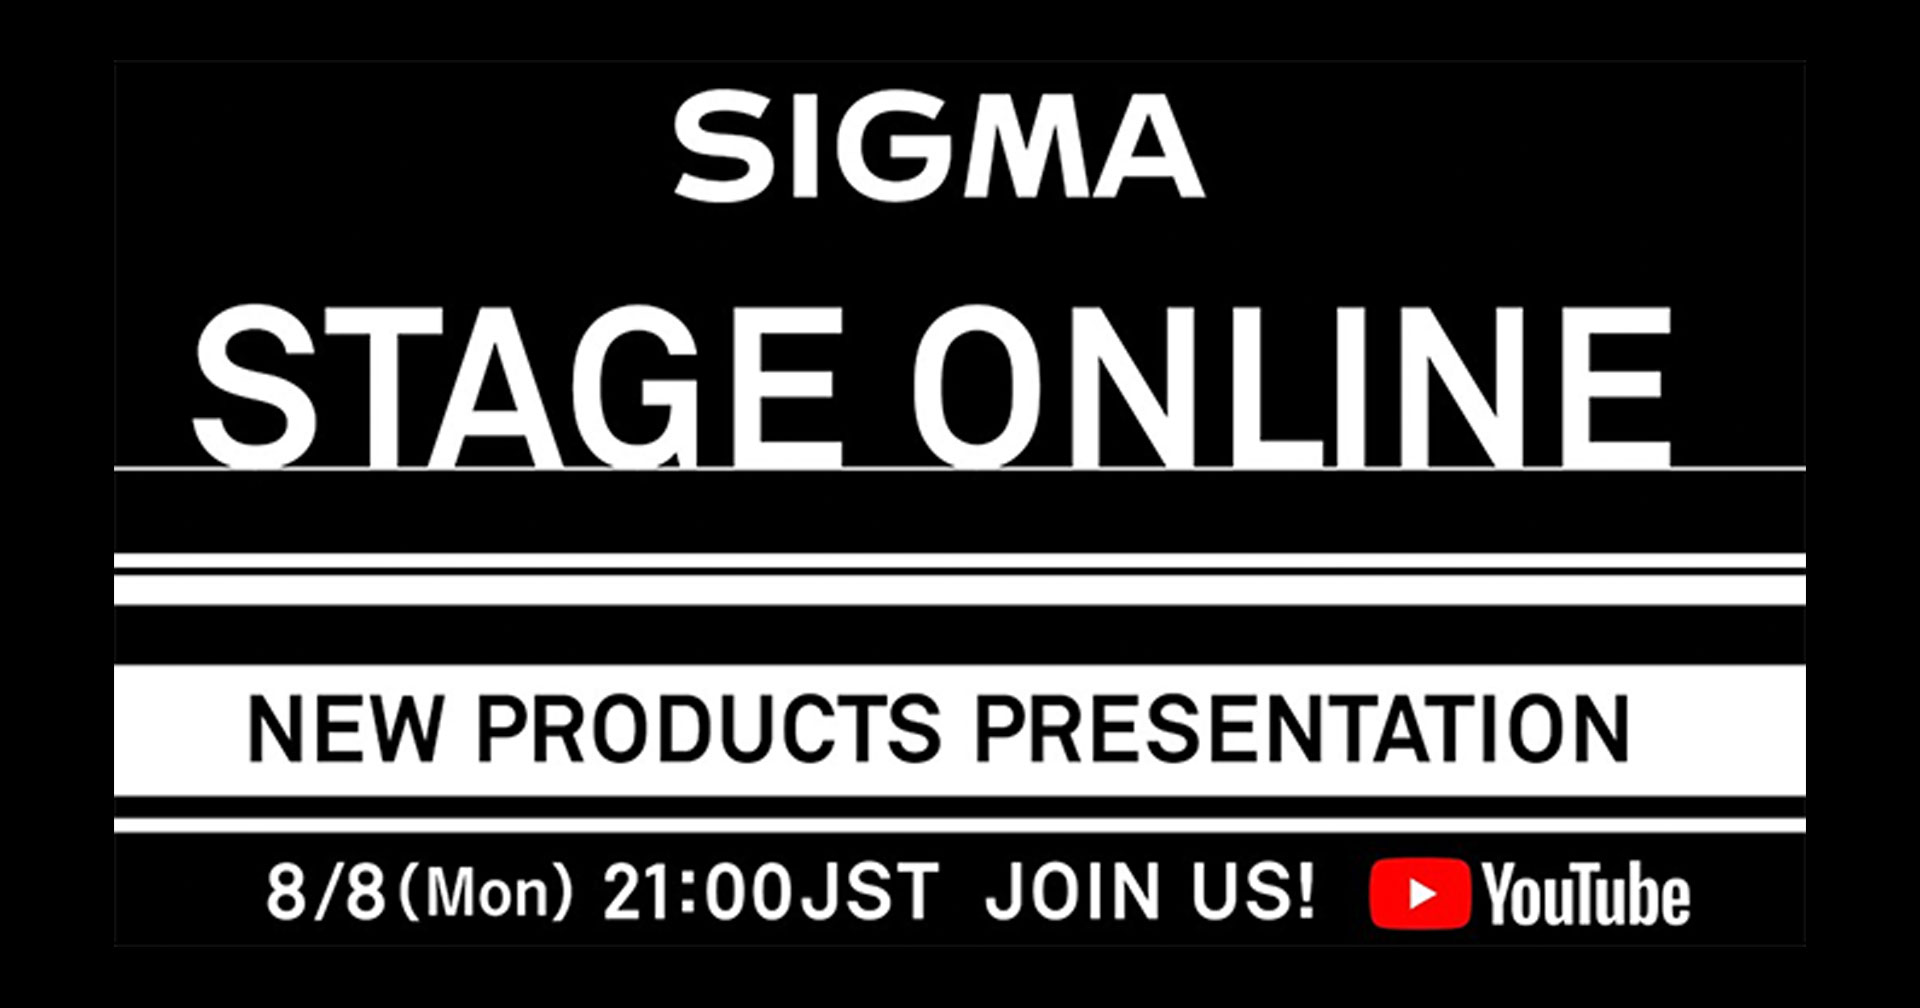 SIGMA เตรียมเปิดตัวเลนส์ใหม่ 8 สิงหาคมนี้!